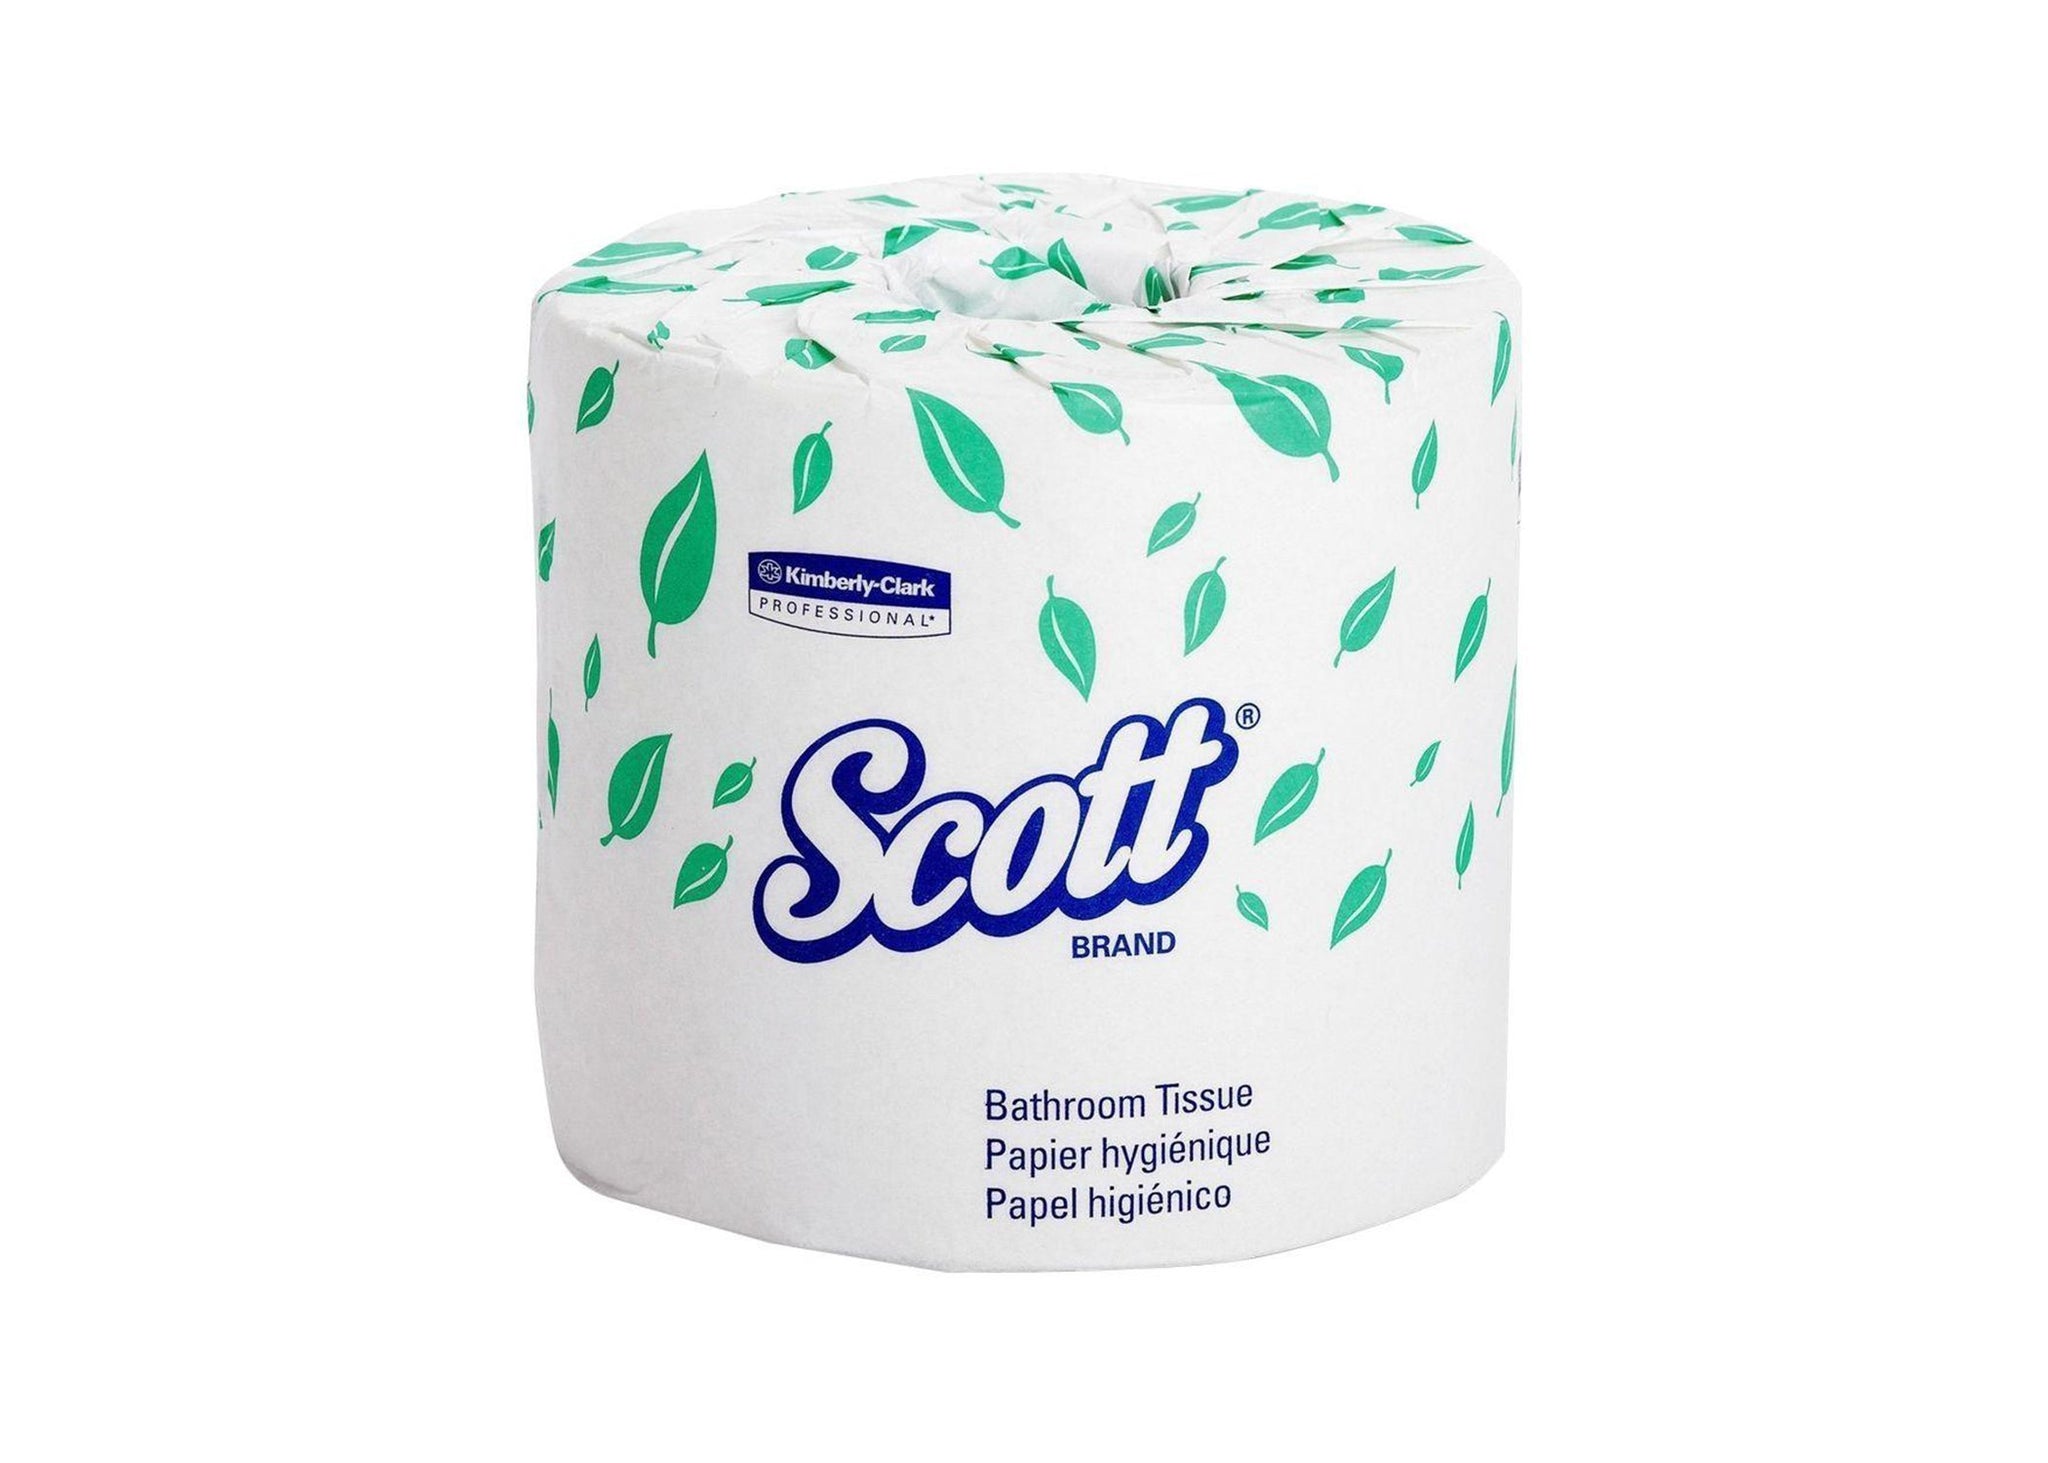 bvi>Scott Toilet Paper - each